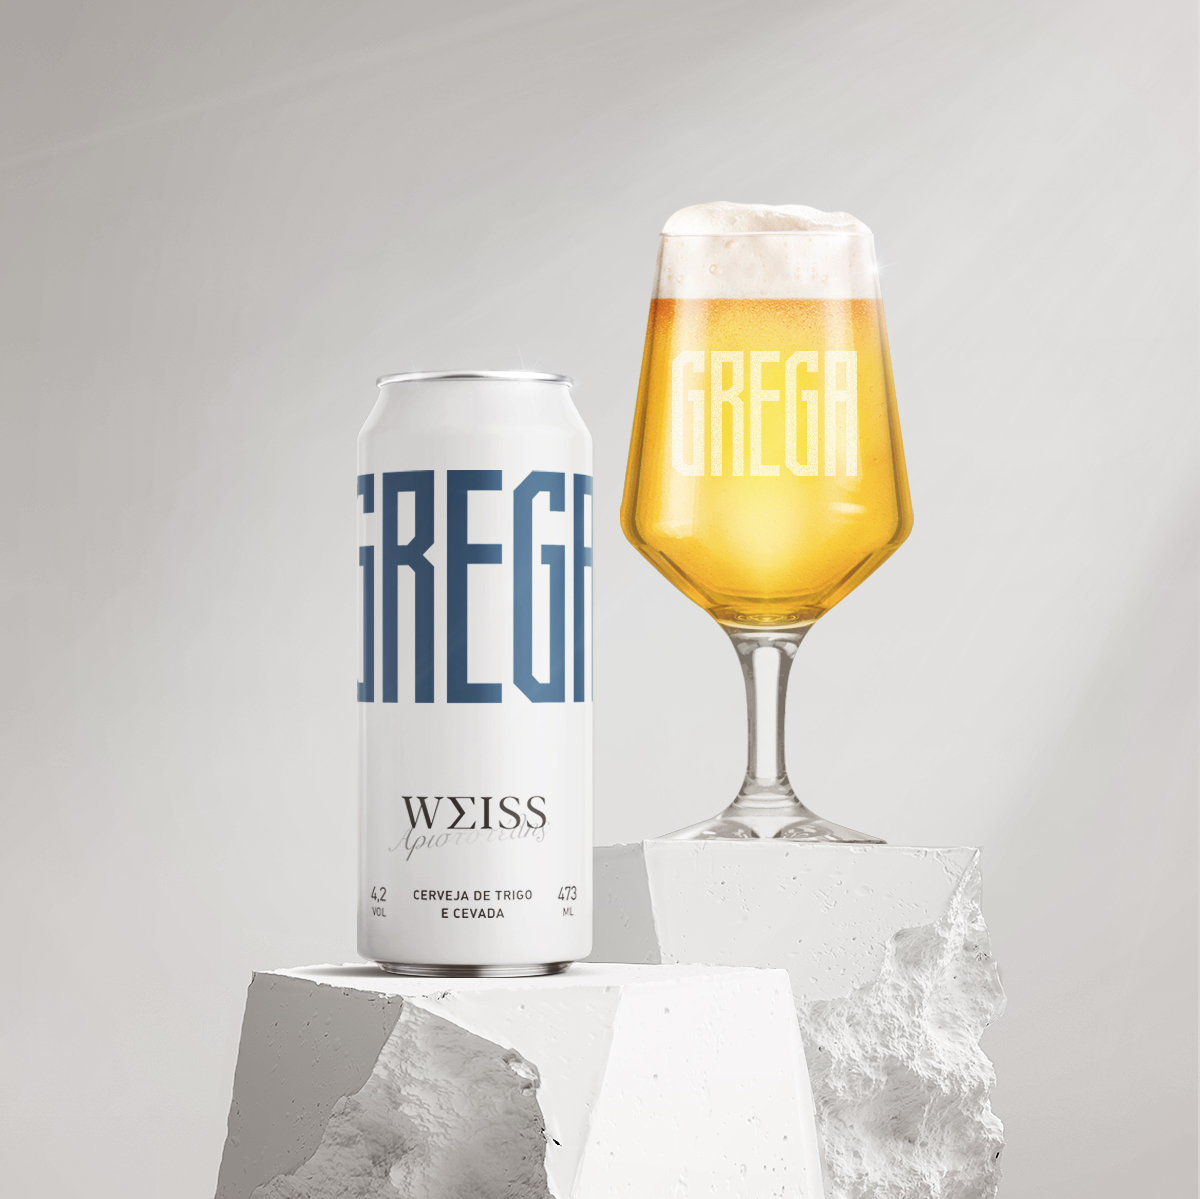 Greek Philosophy Inspired Beer by Vbiasi Design